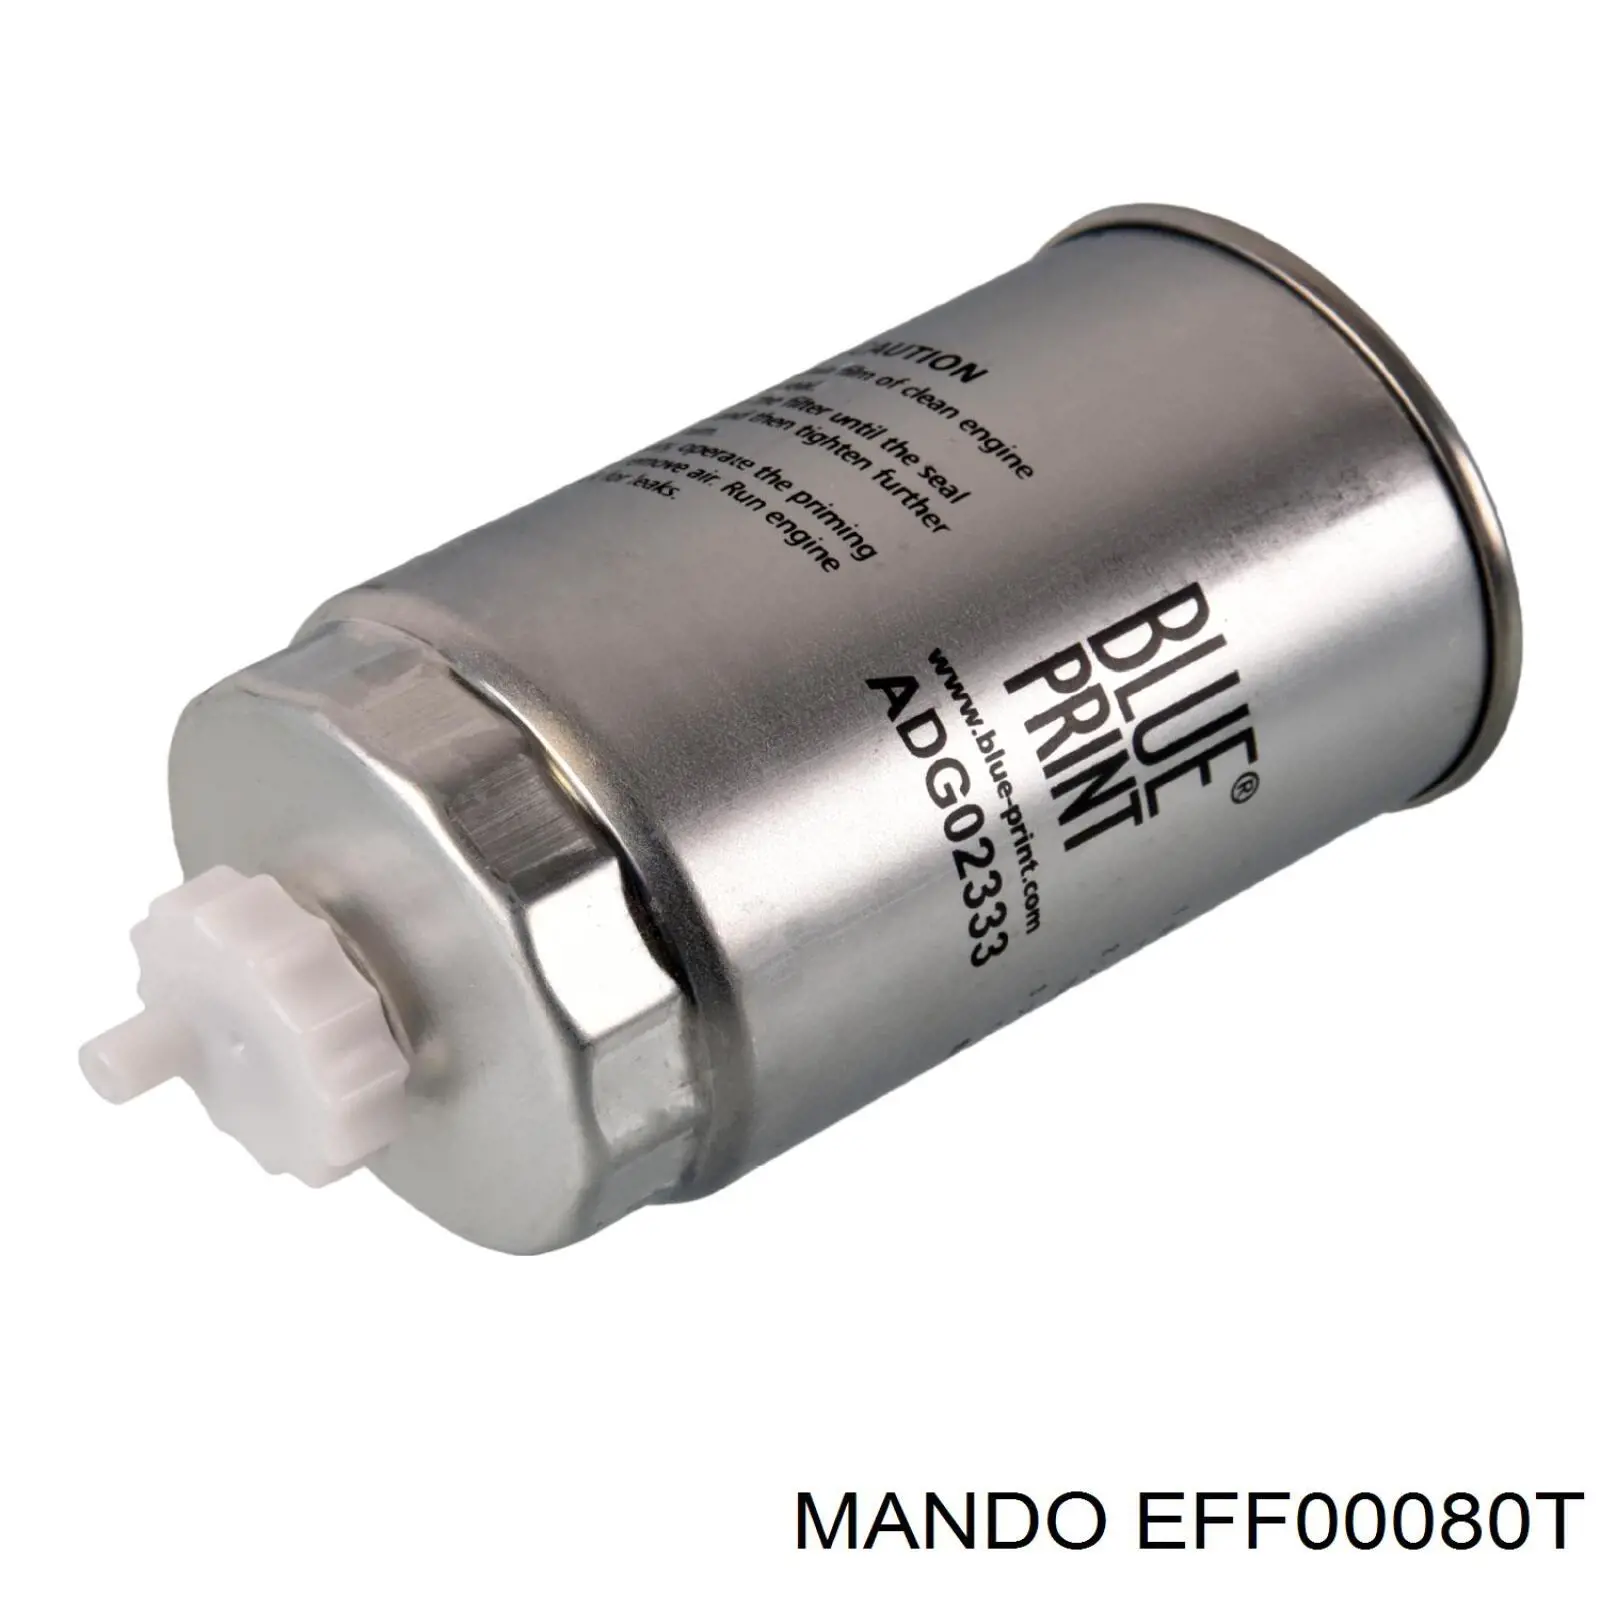 EFF00080T Mando топливный фильтр